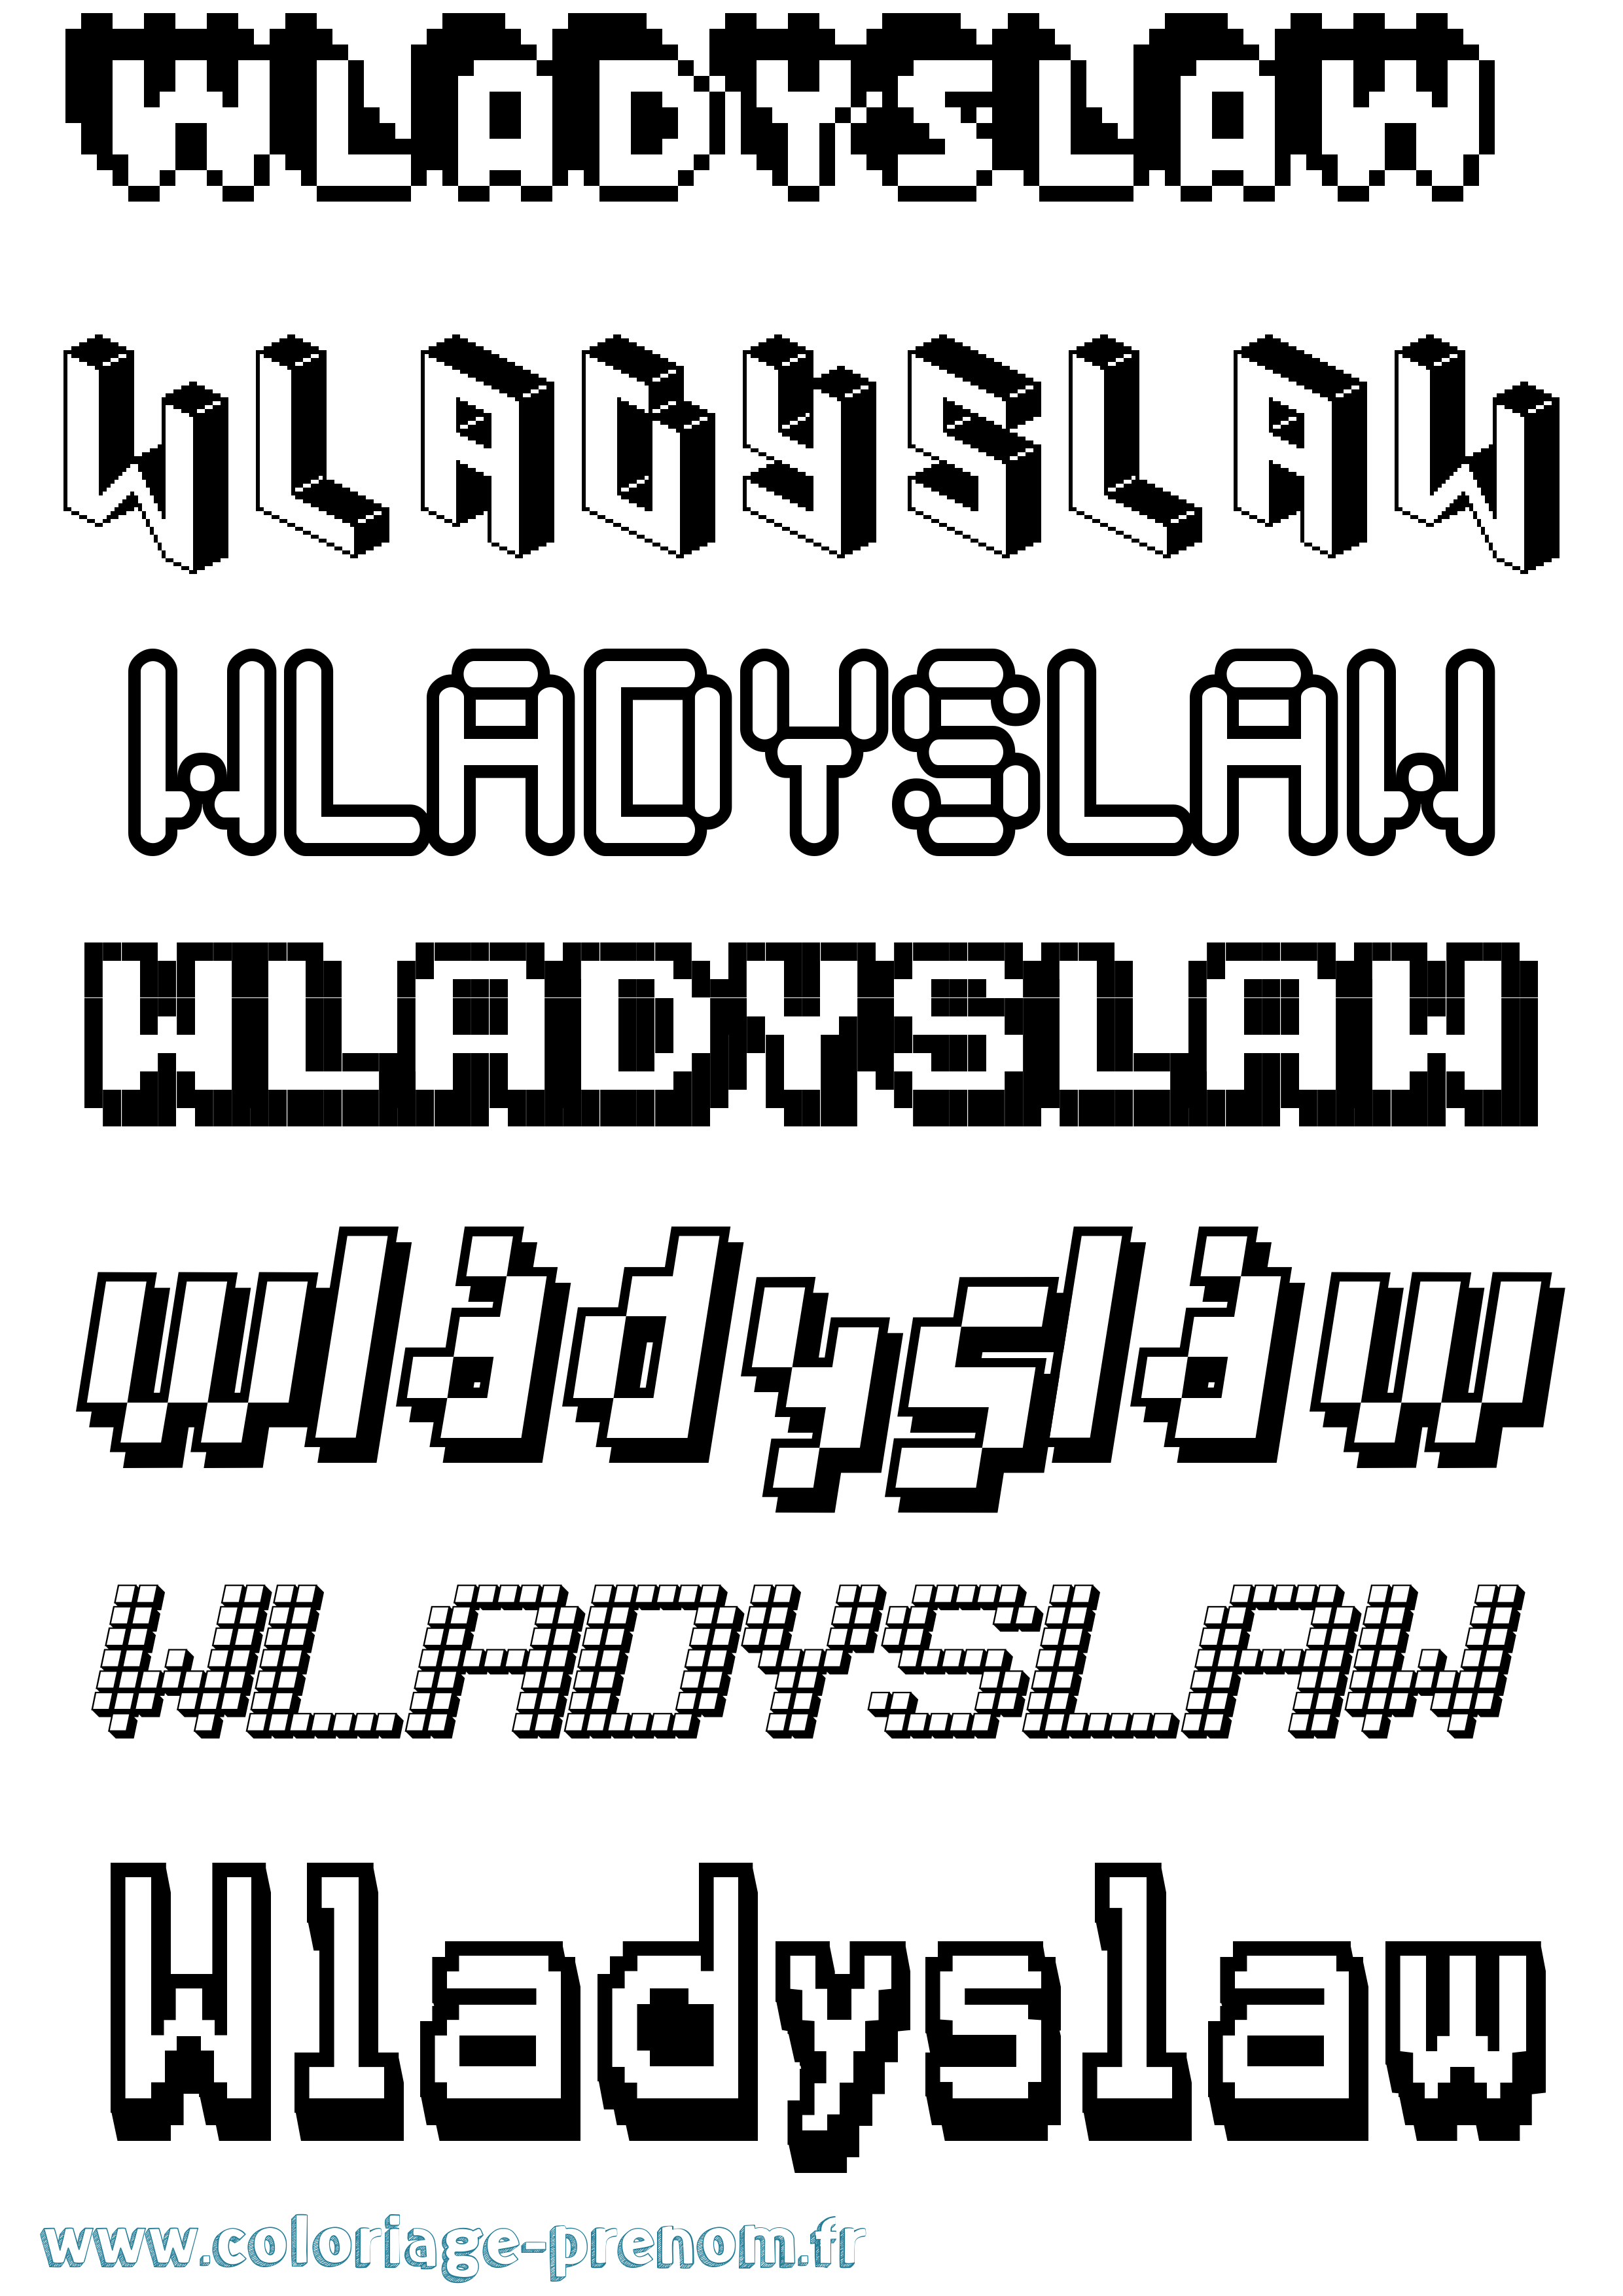 Coloriage prénom Wladyslaw Pixel